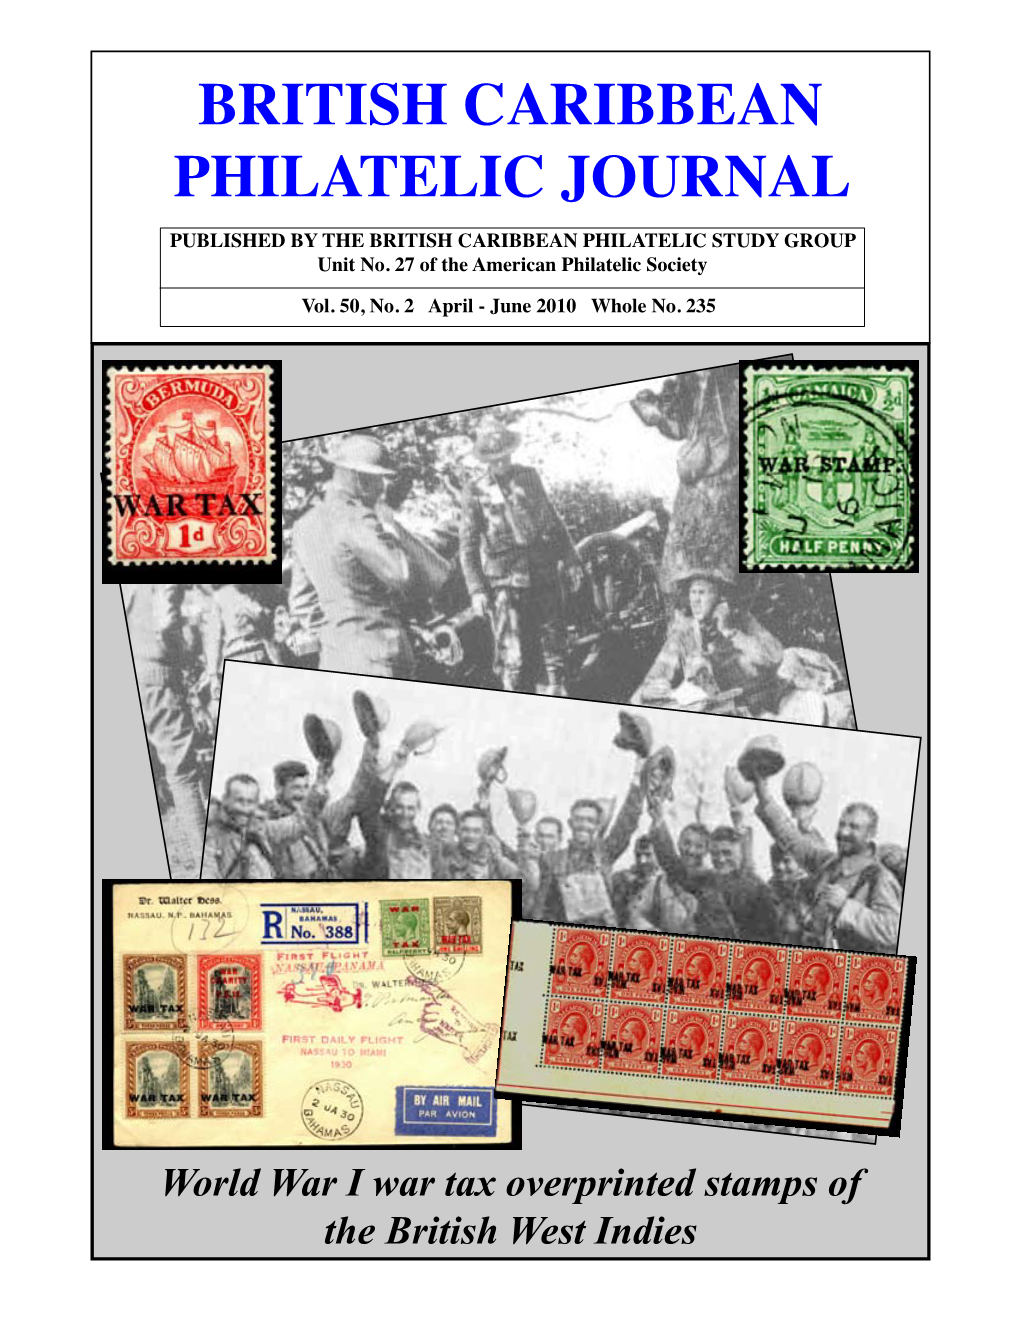 BRITISH CARIBBEAN PHILATELIC JOURNAL PUBLISHED by the BRITISH CARIBBEAN PHILATELIC STUDY GROUP Unit No